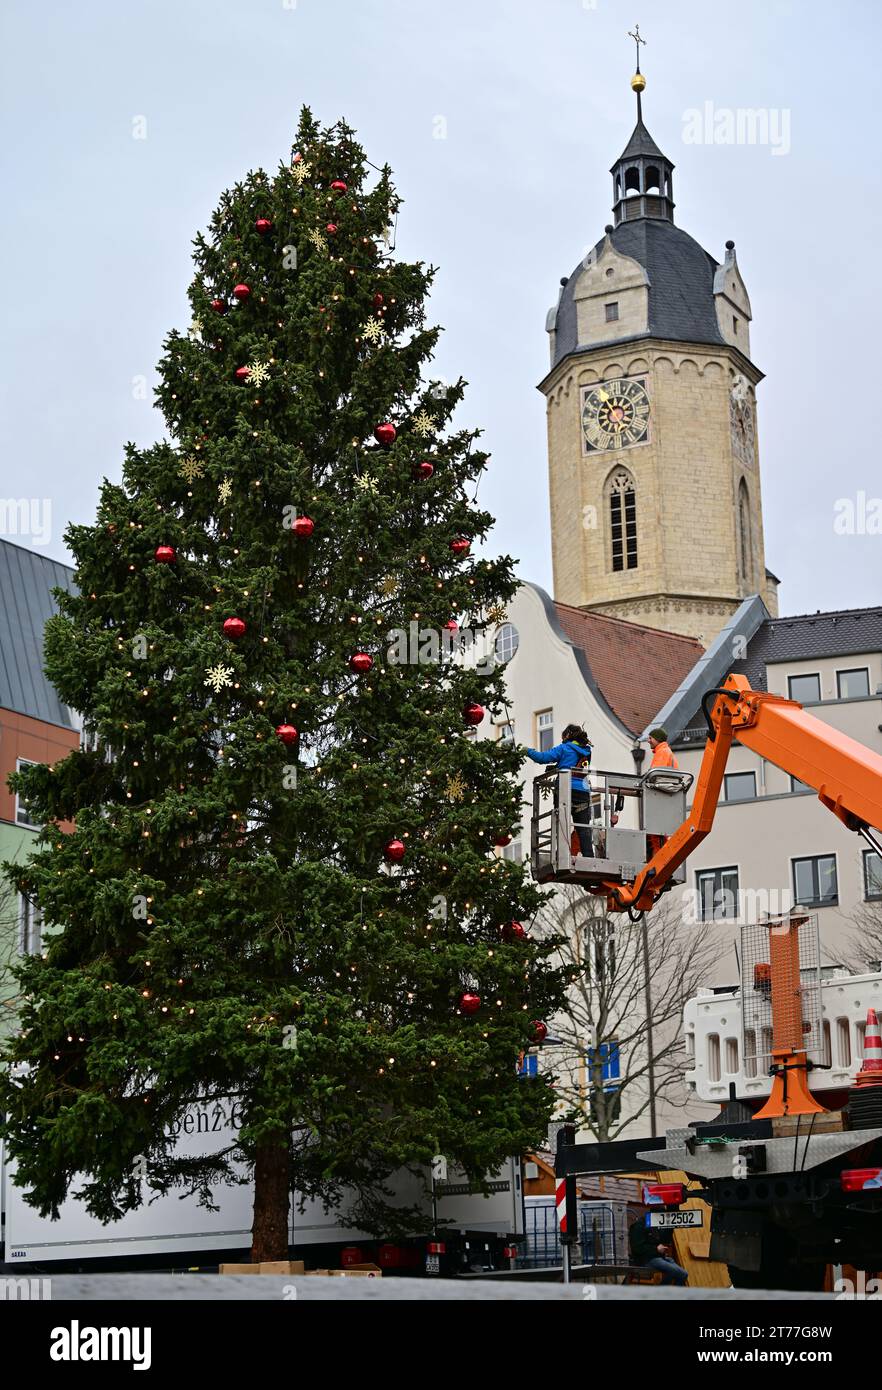 Jena, Deutschland. November 2023. Der Weihnachtsbaum auf dem Jenaer Marktplatz ist dekoriert. Die 18 Meter hohe Blaufichte bildet den Mittelpunkt des Jenaer Weihnachtsmarktes, der vom 24. November bis 22. Dezember stattfindet. Quelle: Martin Schutt/dpa/Alamy Live News Stockfoto